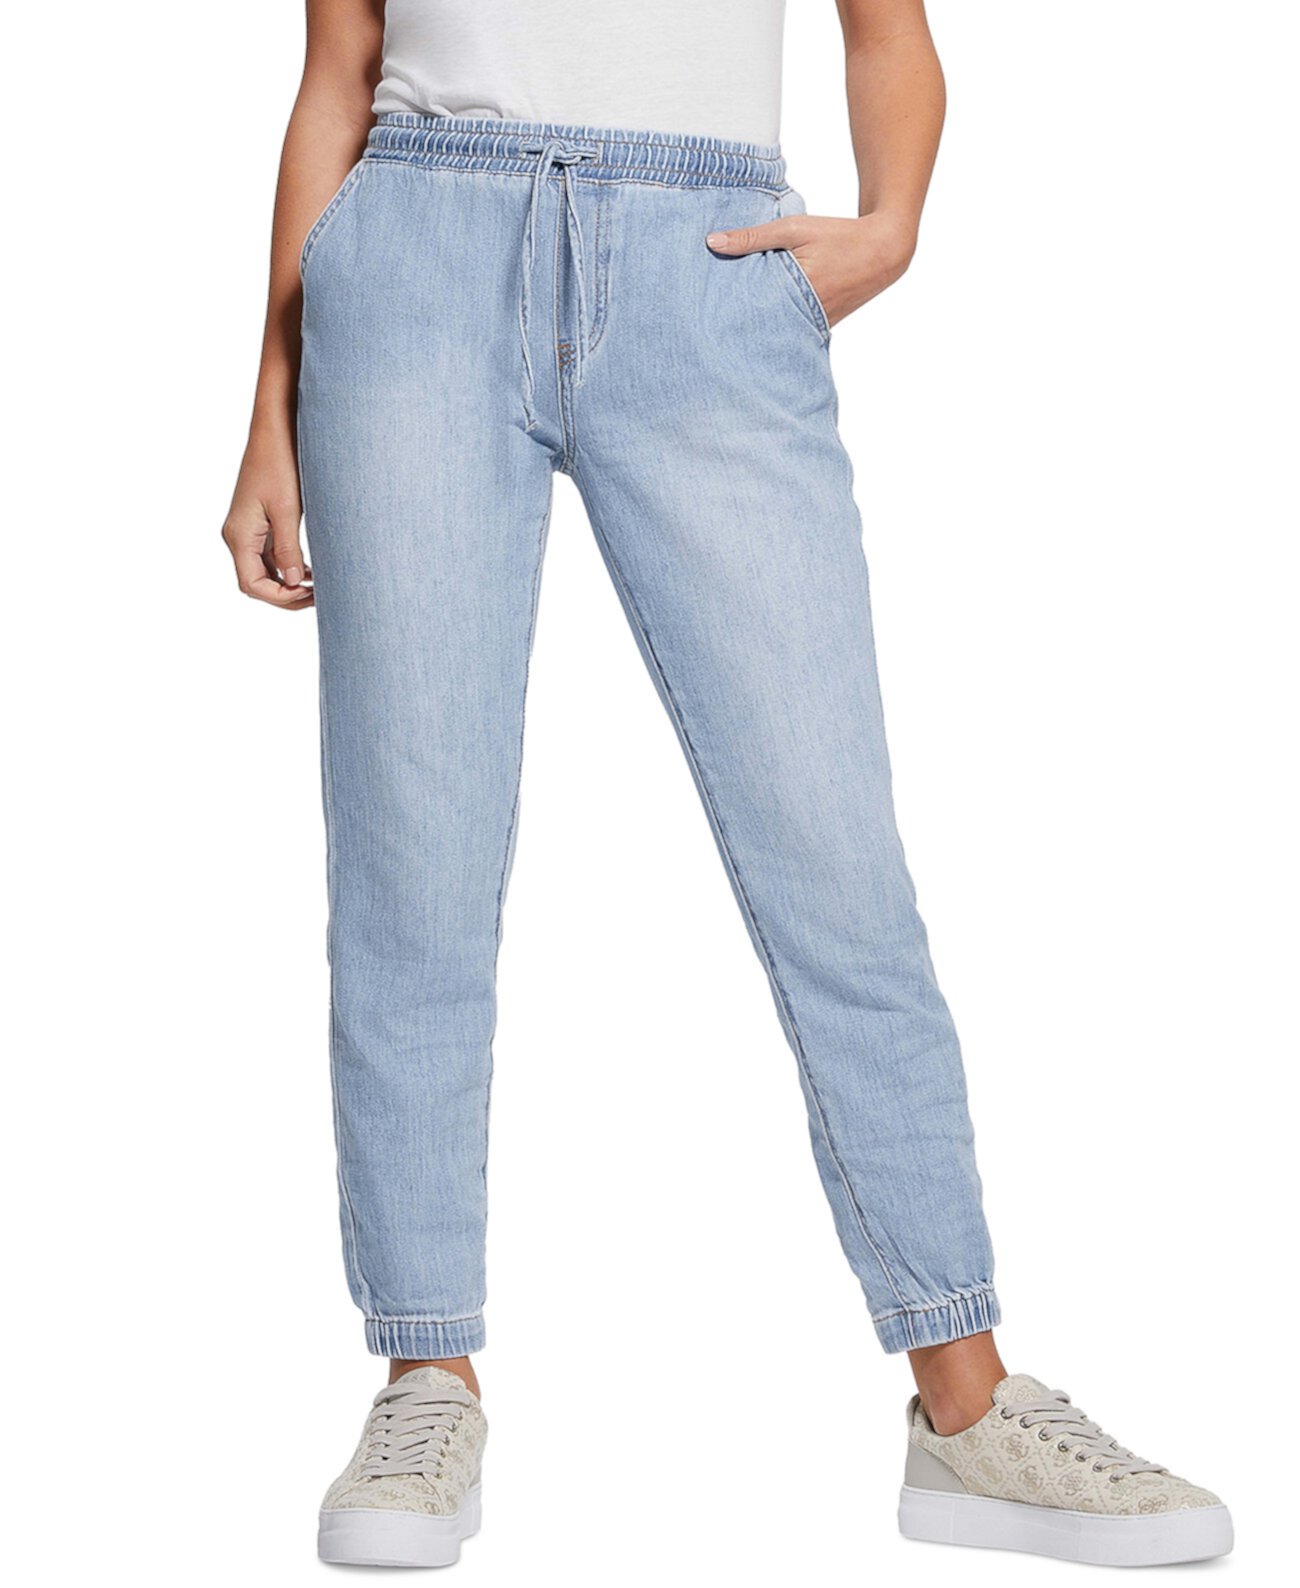 Женские джинсы-джоггеры Noah Denim с завязками на талии GUESS